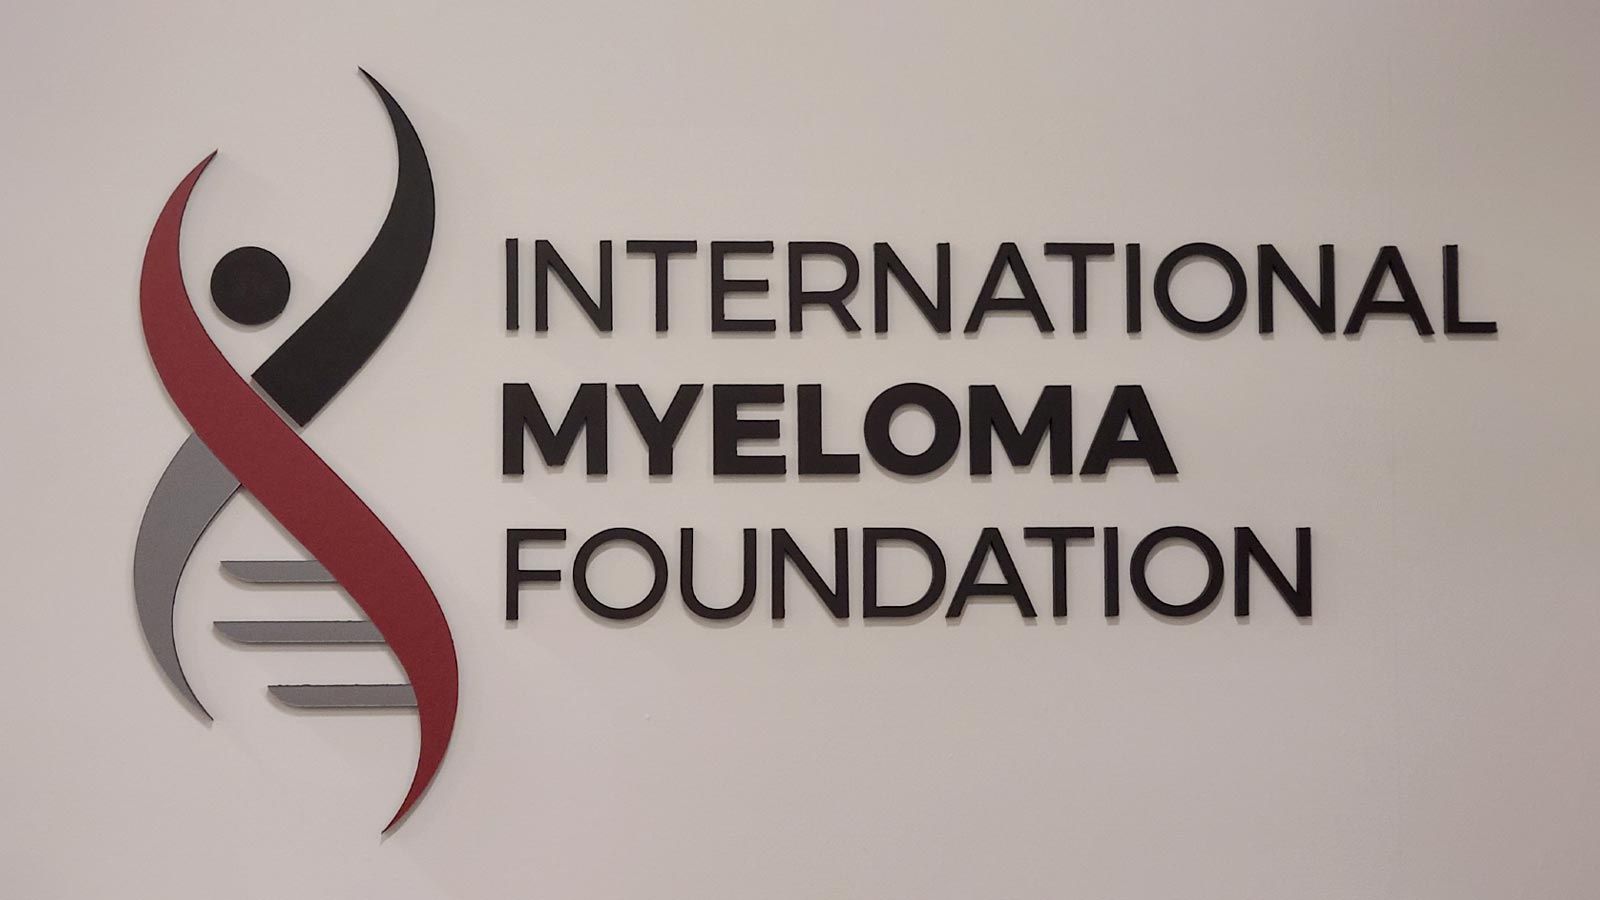 International Myeloma Foundation foam core logo sign